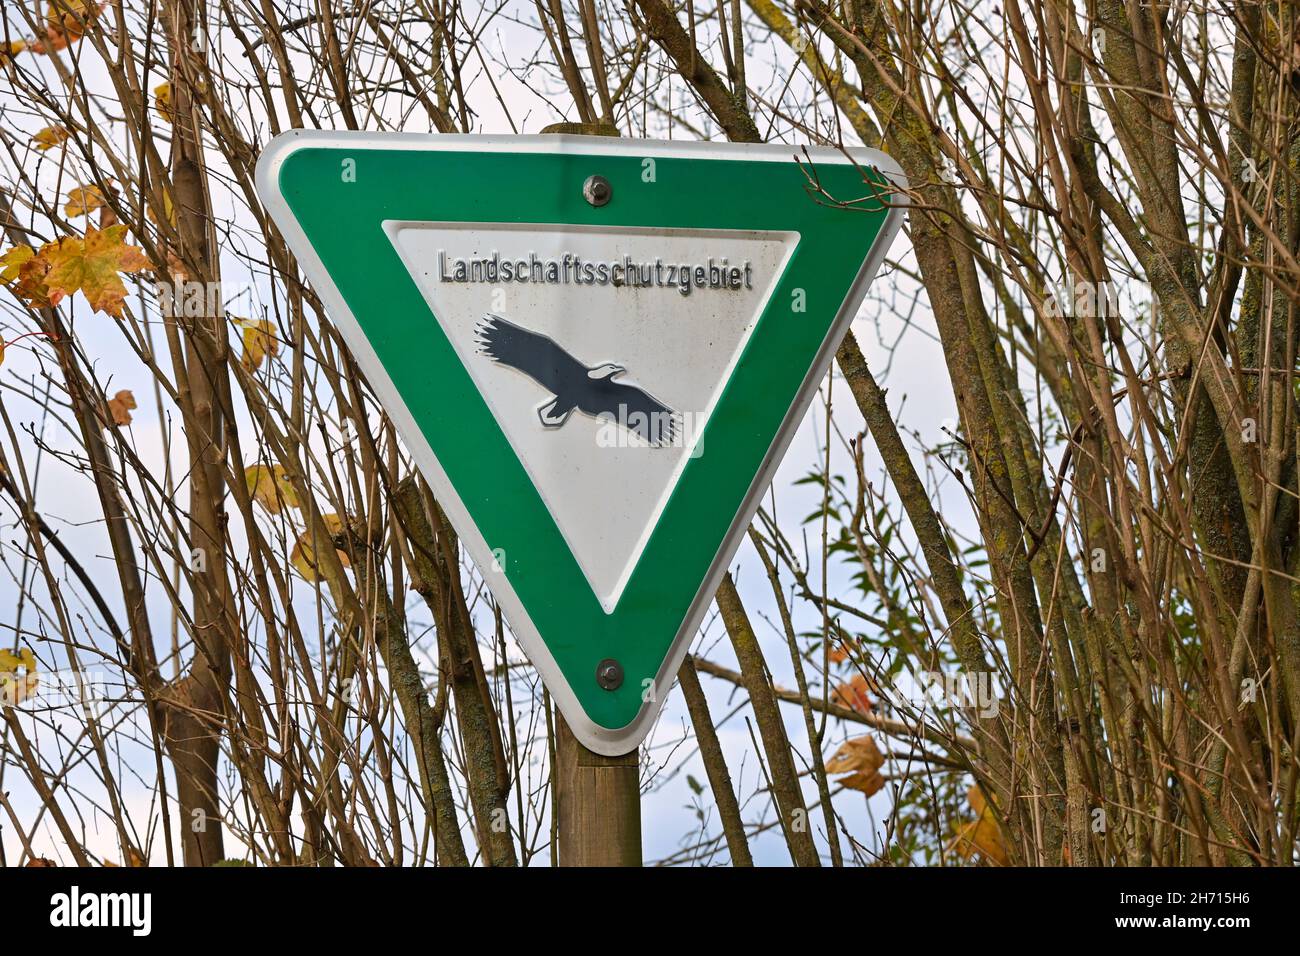 Landschaftsschutzgebiet in Deutschland. Grünes Schild mit schwarzem Adler, das auf ein Landschaftsschutzgebiet hinweist. Landschaftsschutzgebiet. Stockfoto